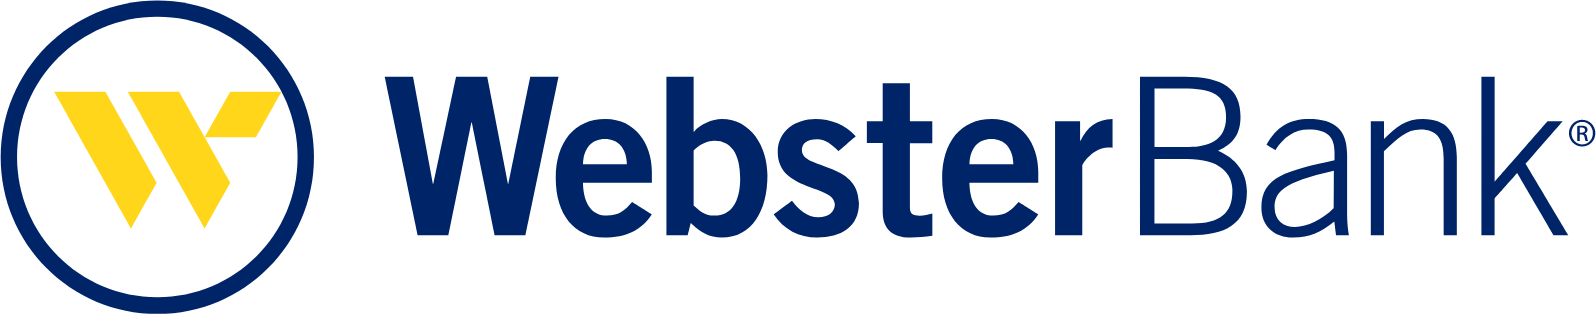 Webster Financial logo large (transparent PNG)